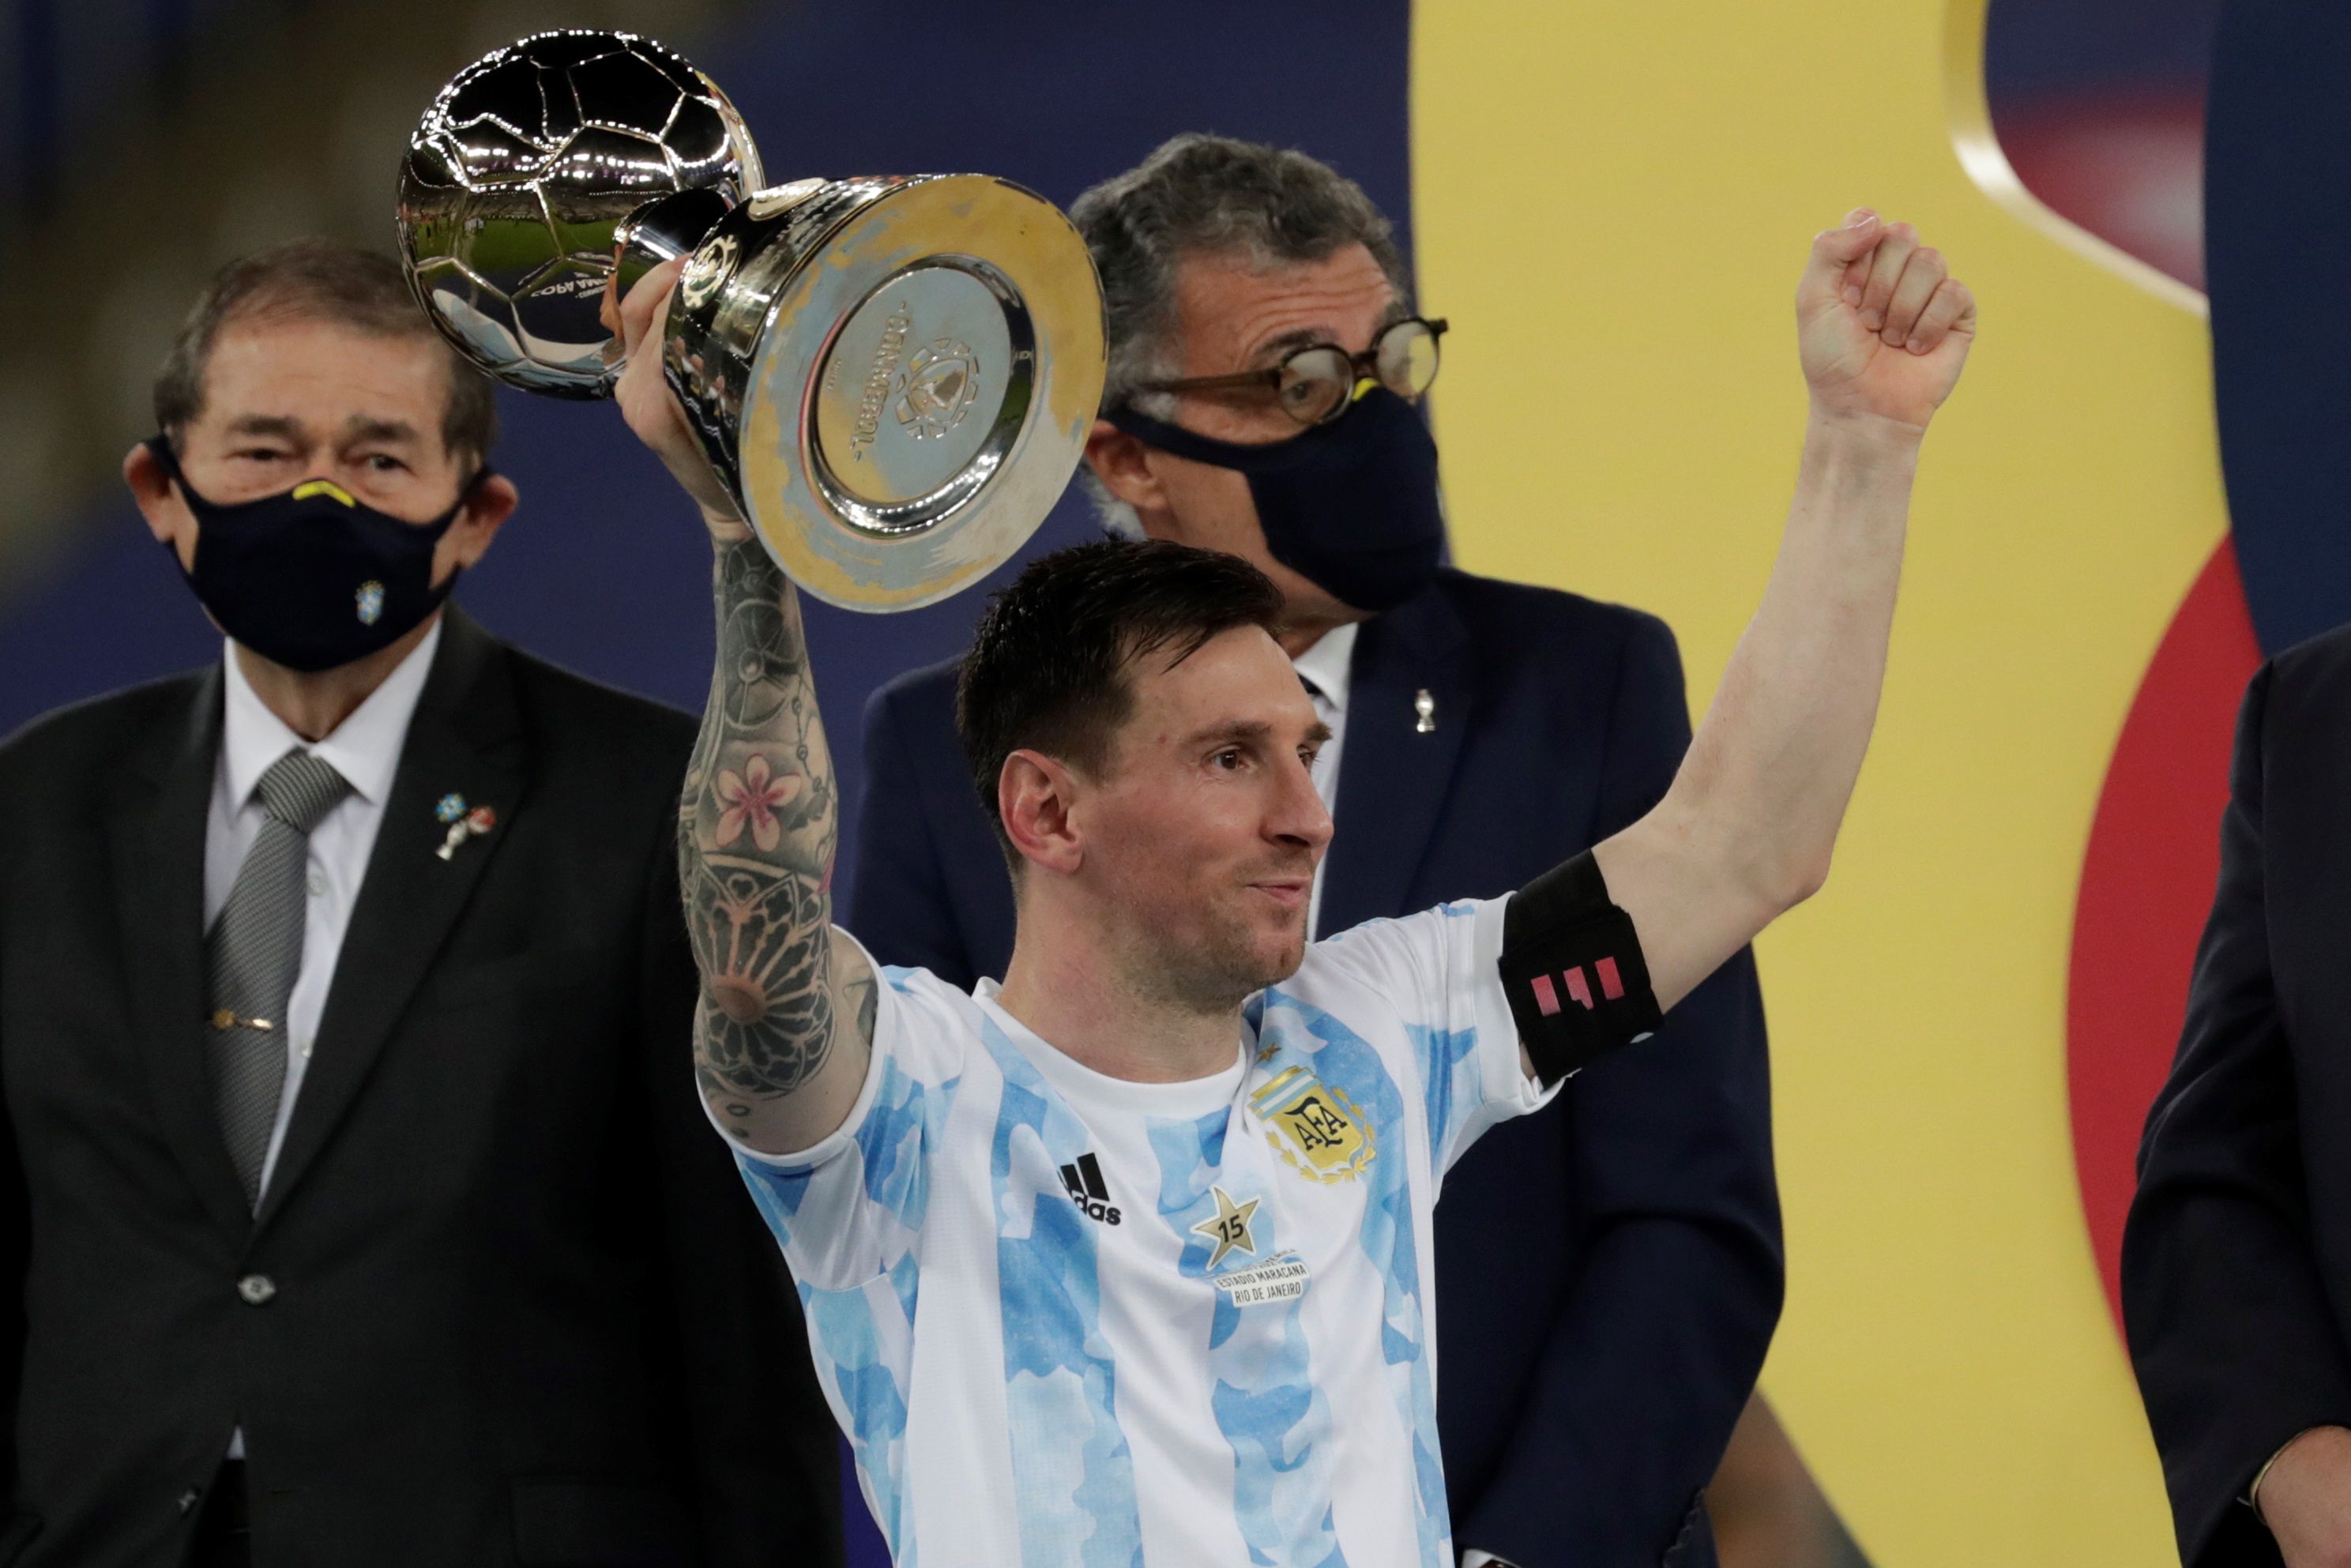 Megvan Lionel Messi első válogatott trófeája /Fotó: EPA/Antonio Lacerda